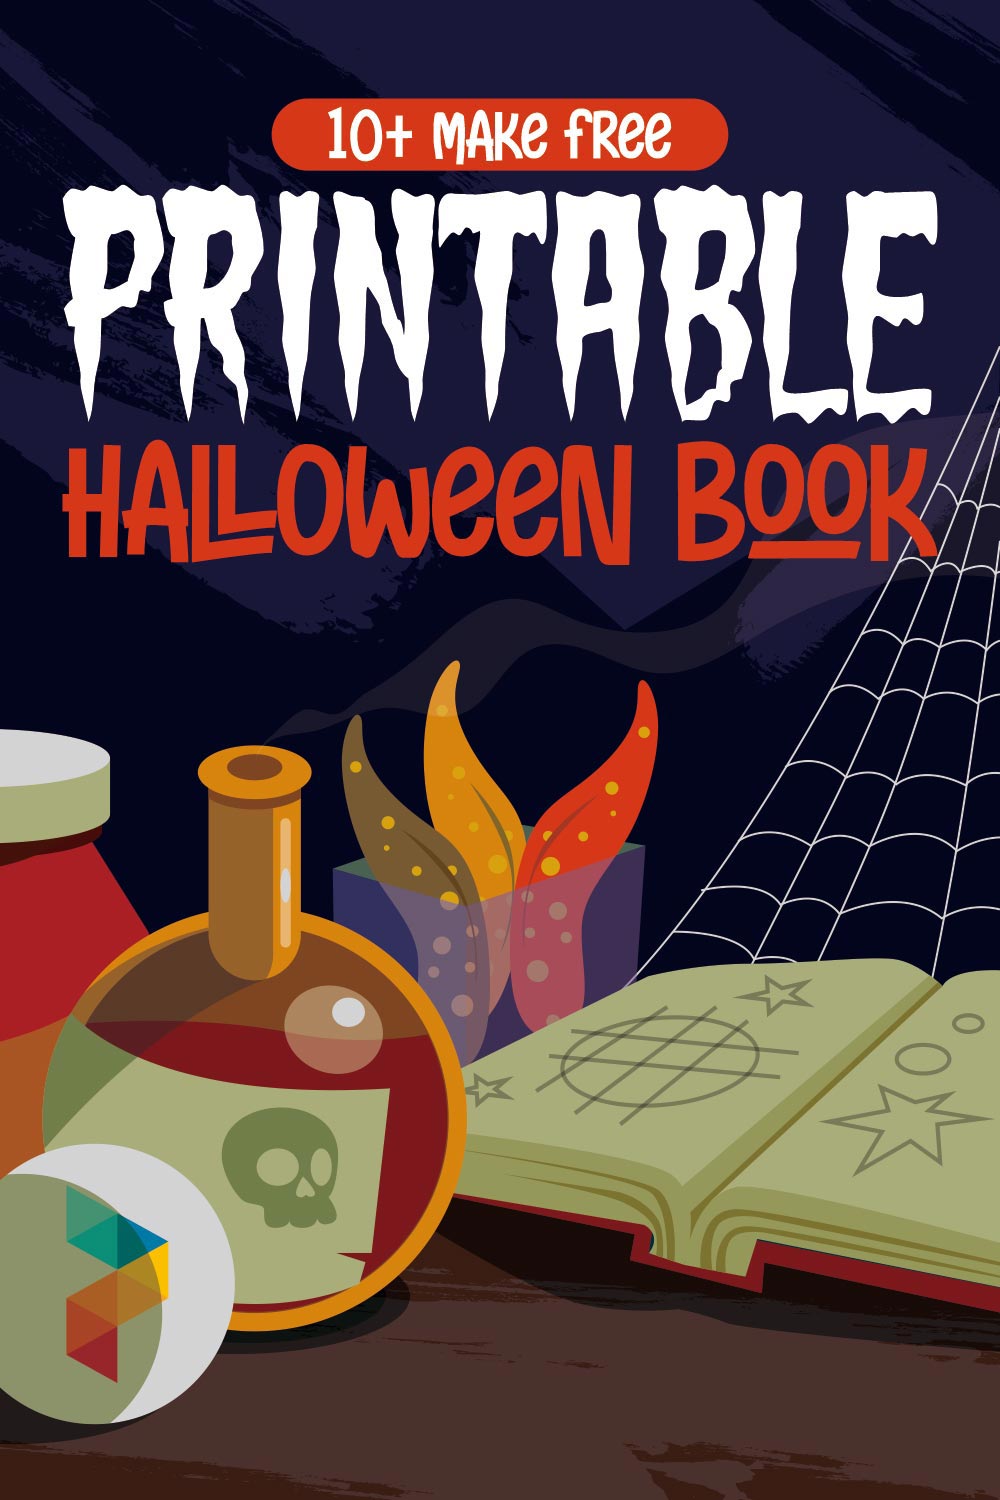 Make Printable Halloween Book